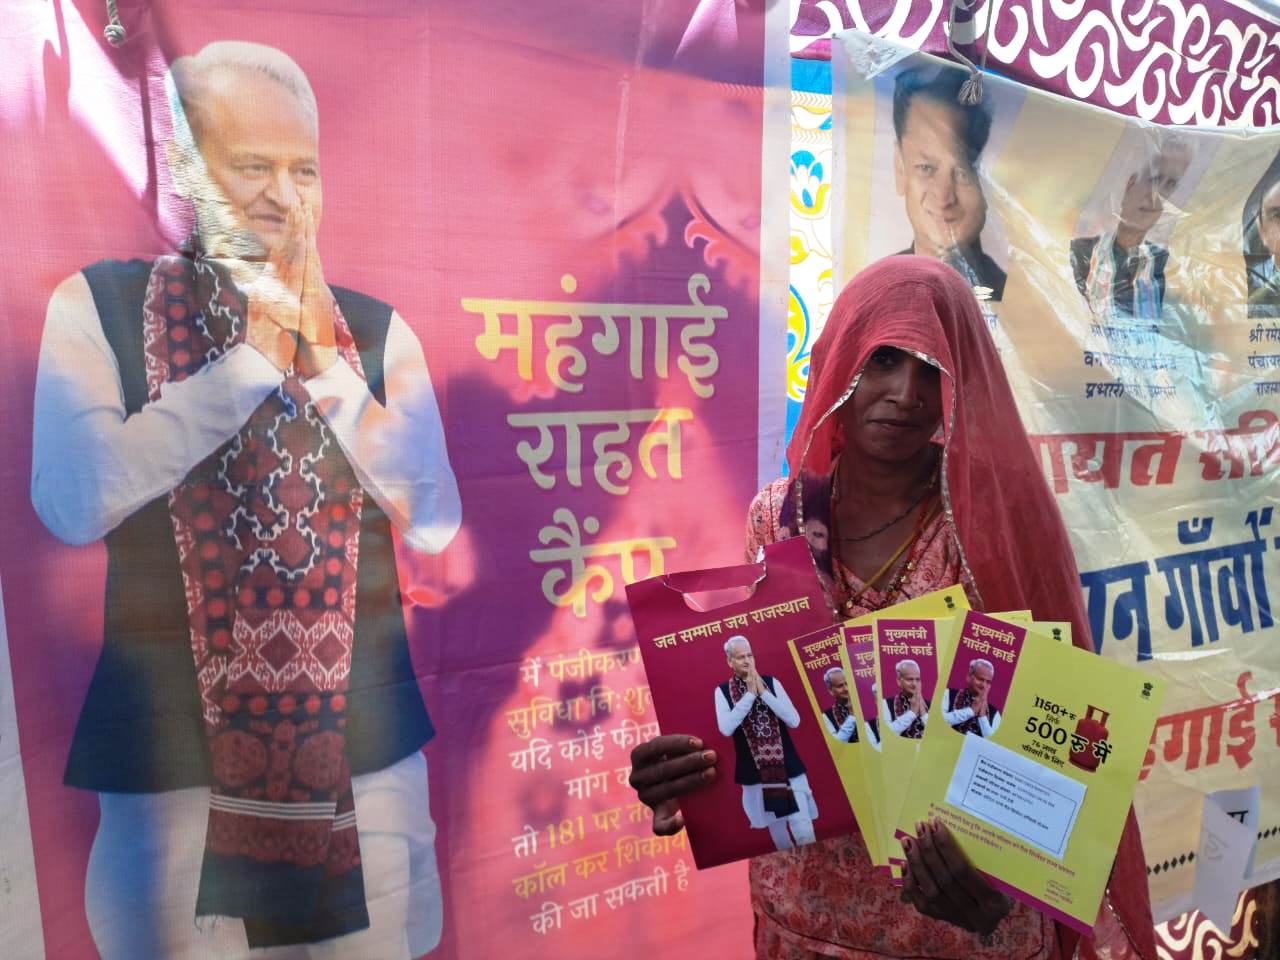 विधवा श्रीमति अमका देवी को मंहगाई से मिली राहत, कैम्प में पाया 7 योजनाओं का लाभ